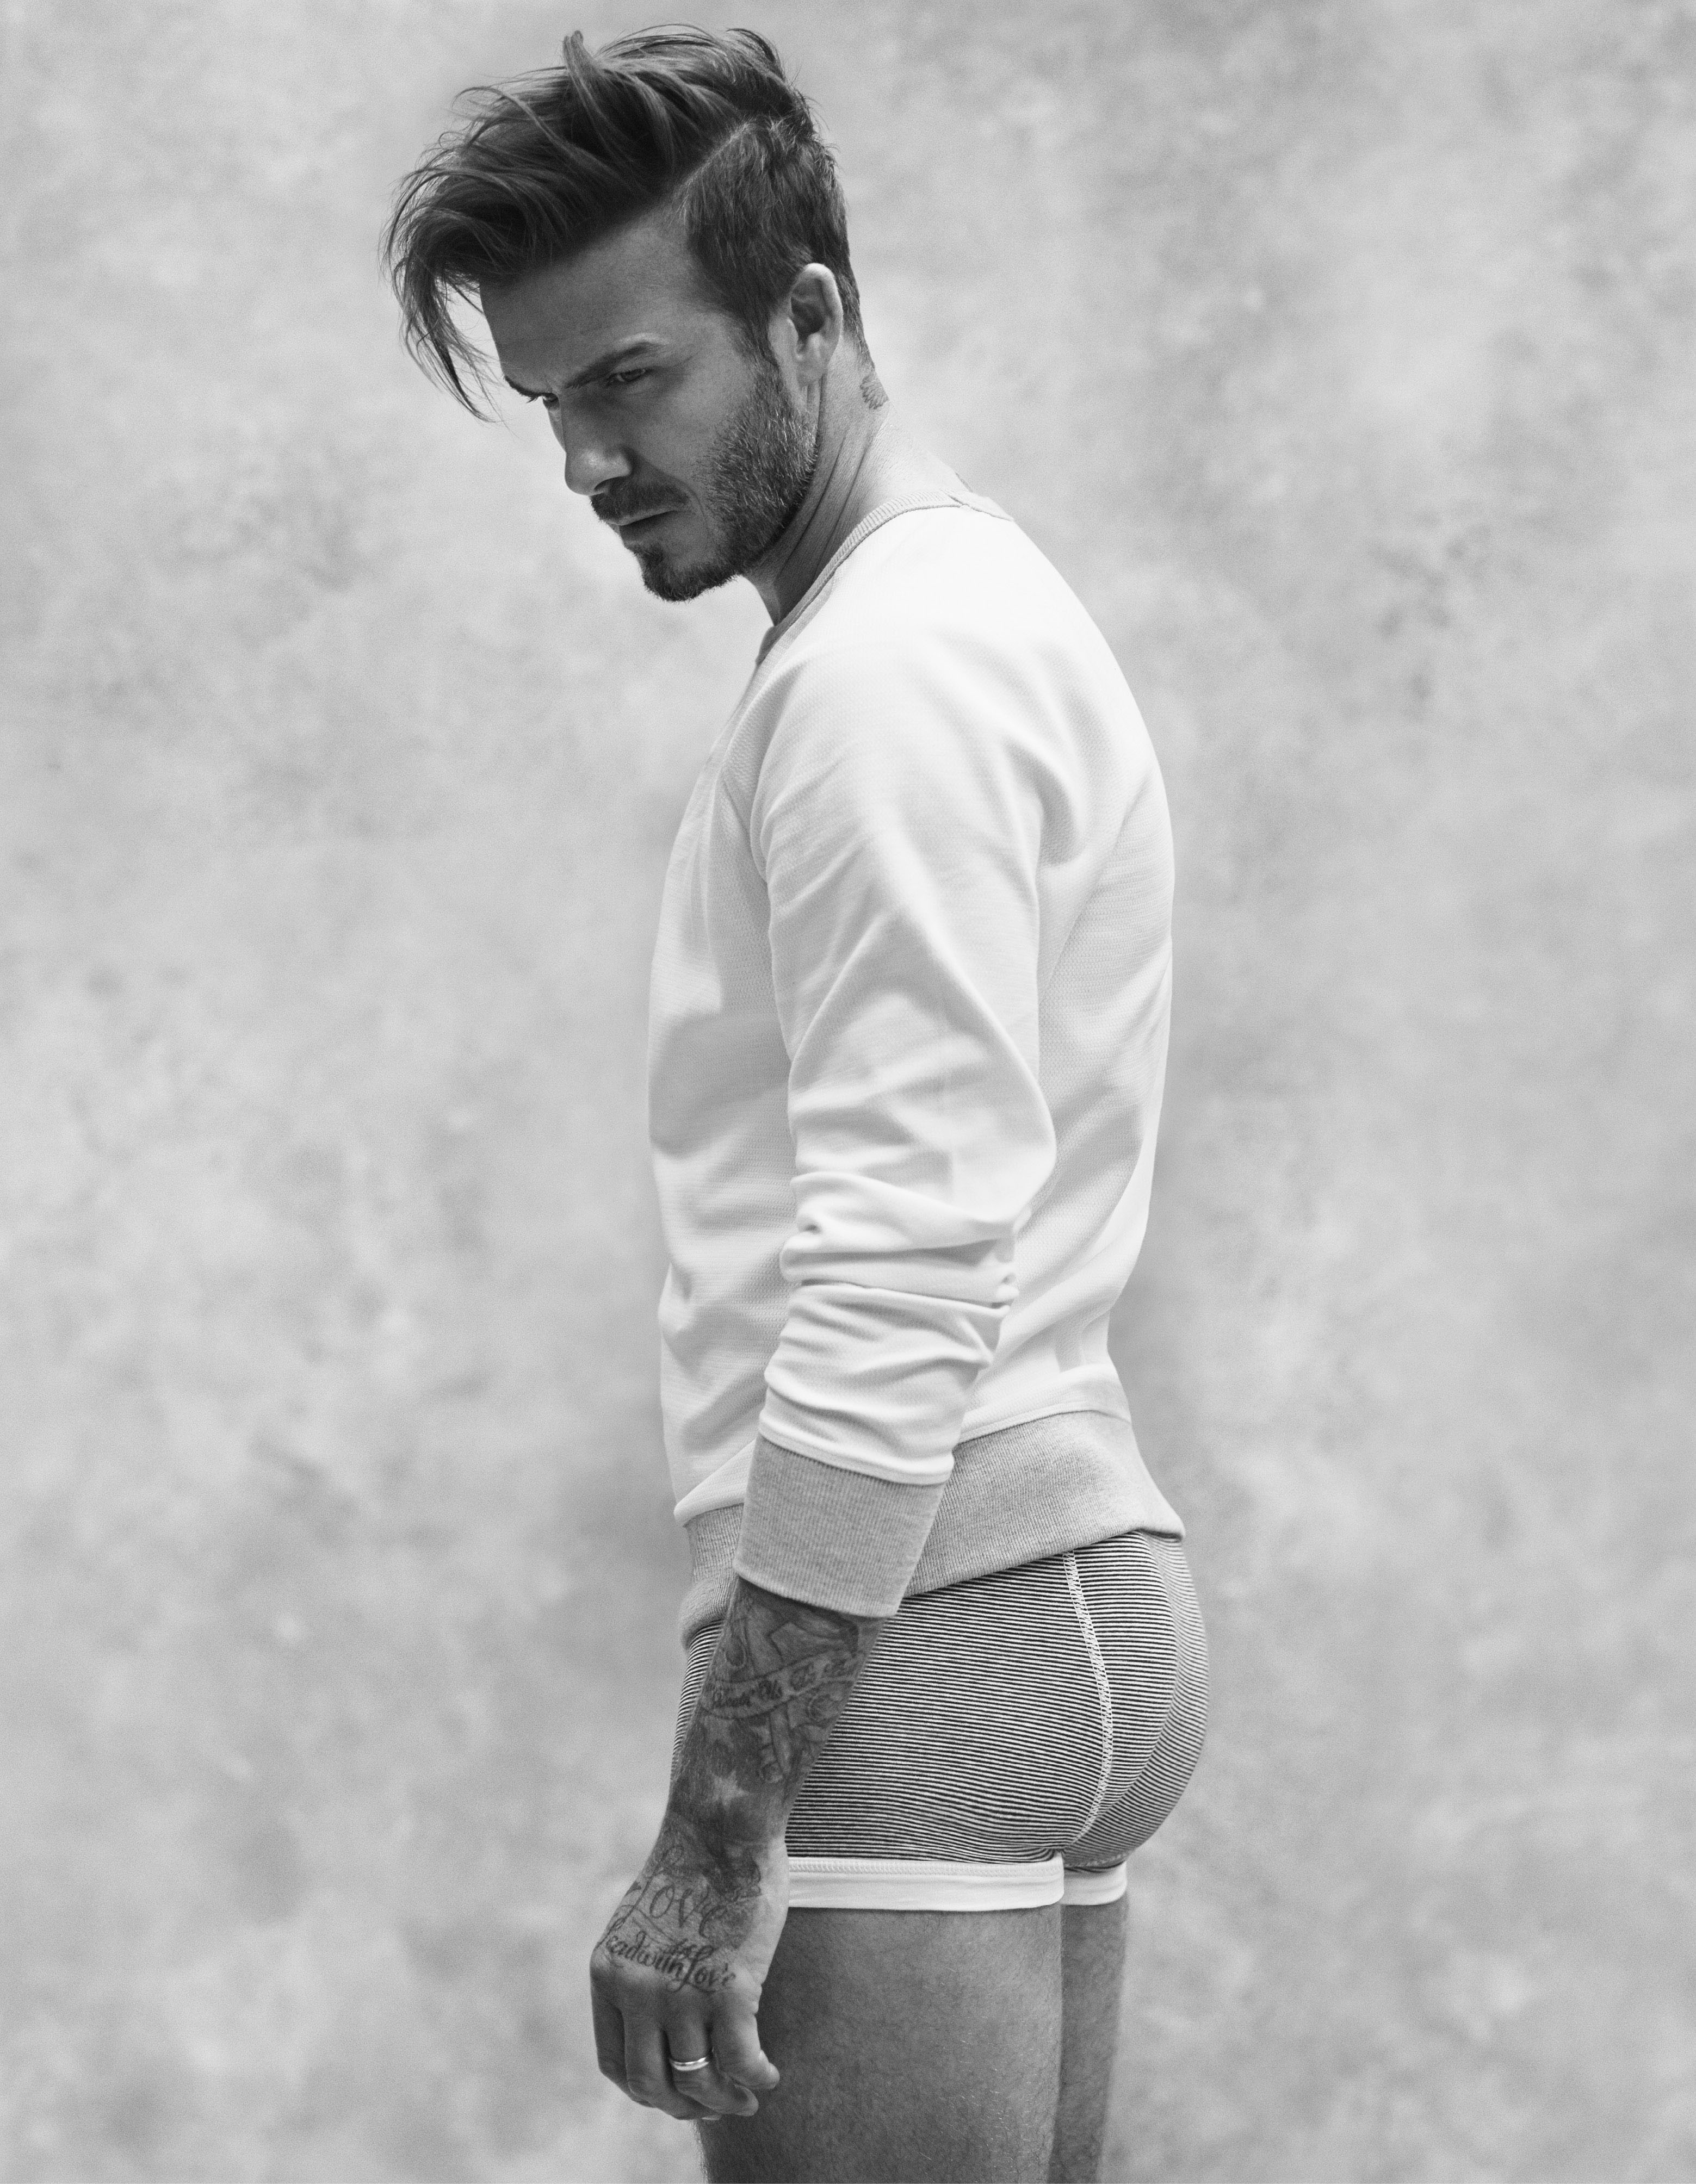 David Beckham x H&M